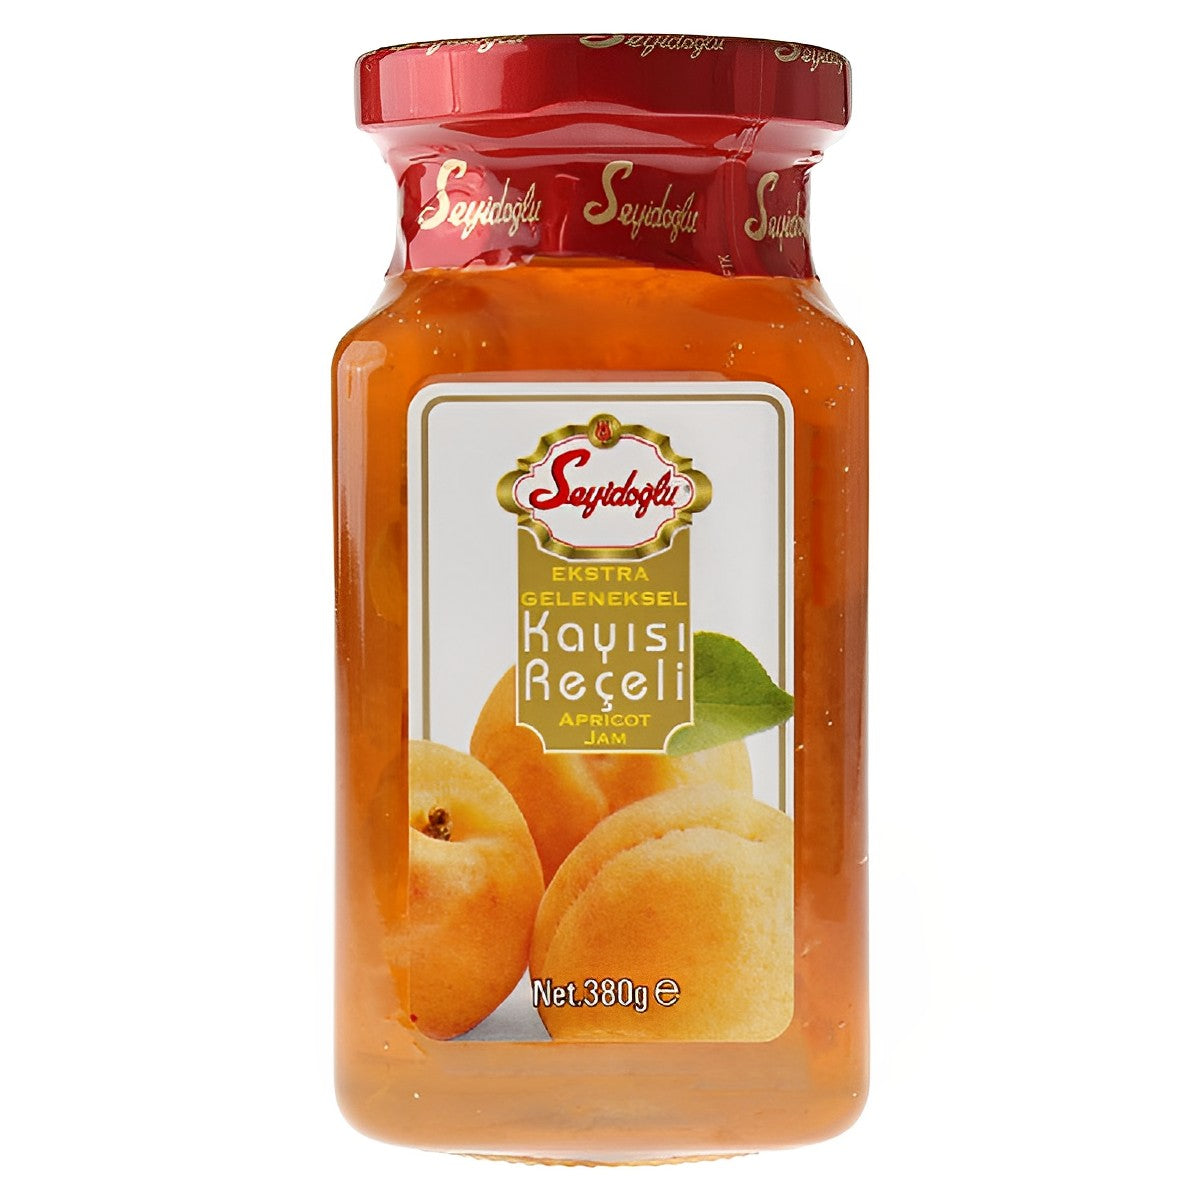 Seyidoglu - Apricot jam - 380g - Continental Food Store